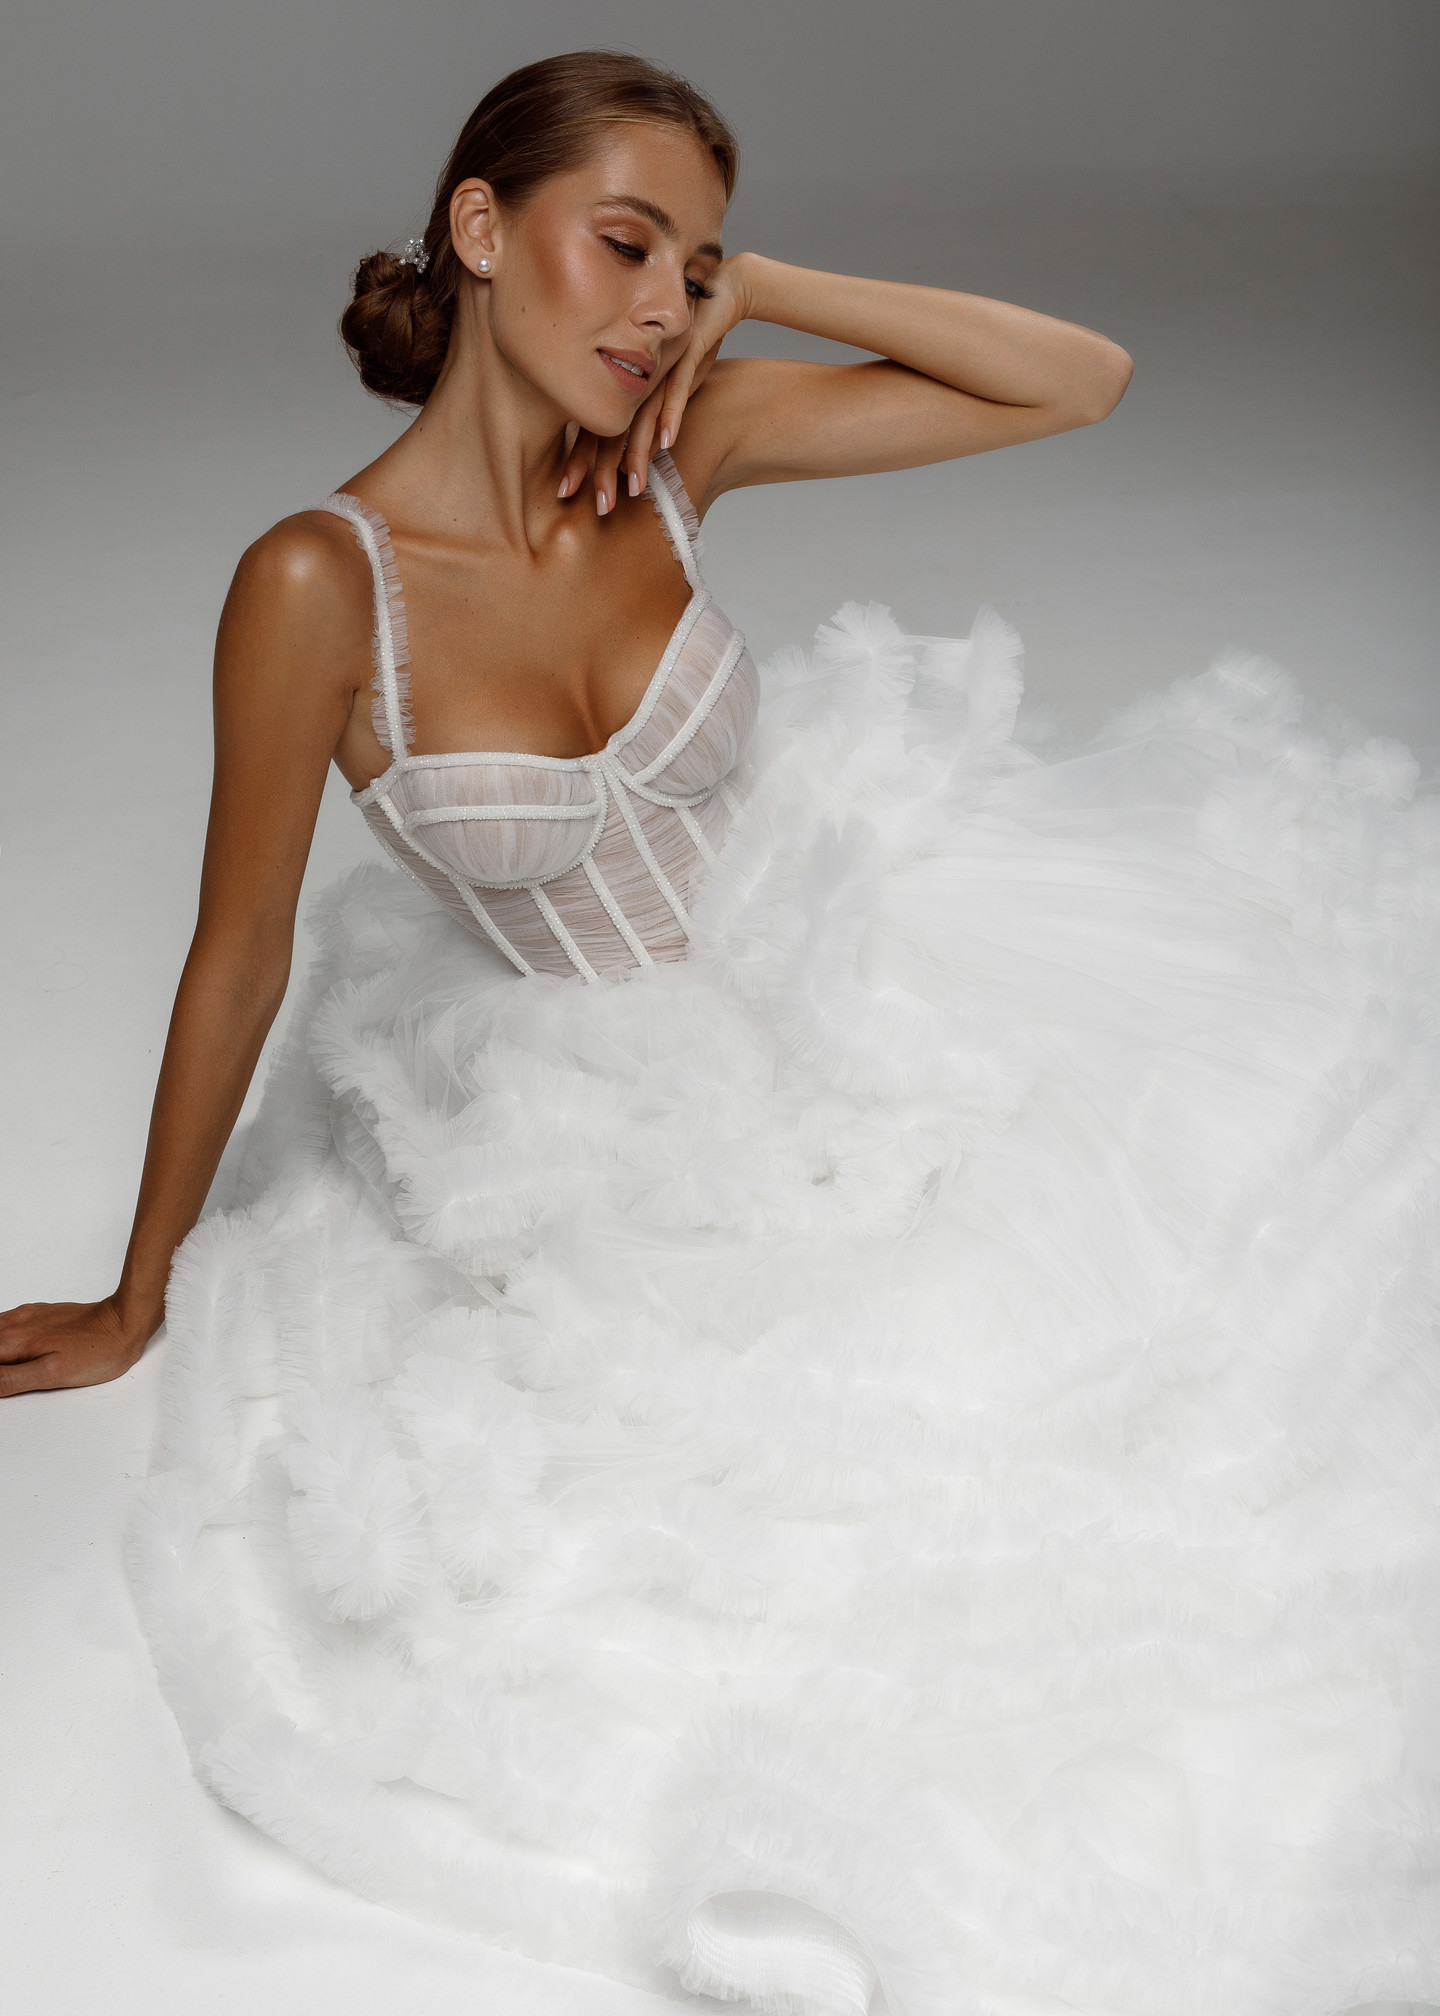 Платье Аврора, 2020, одежда, платье, свадебное, молочно-белый, сетка, вышивка, А-силуэт, шнуровка, архив